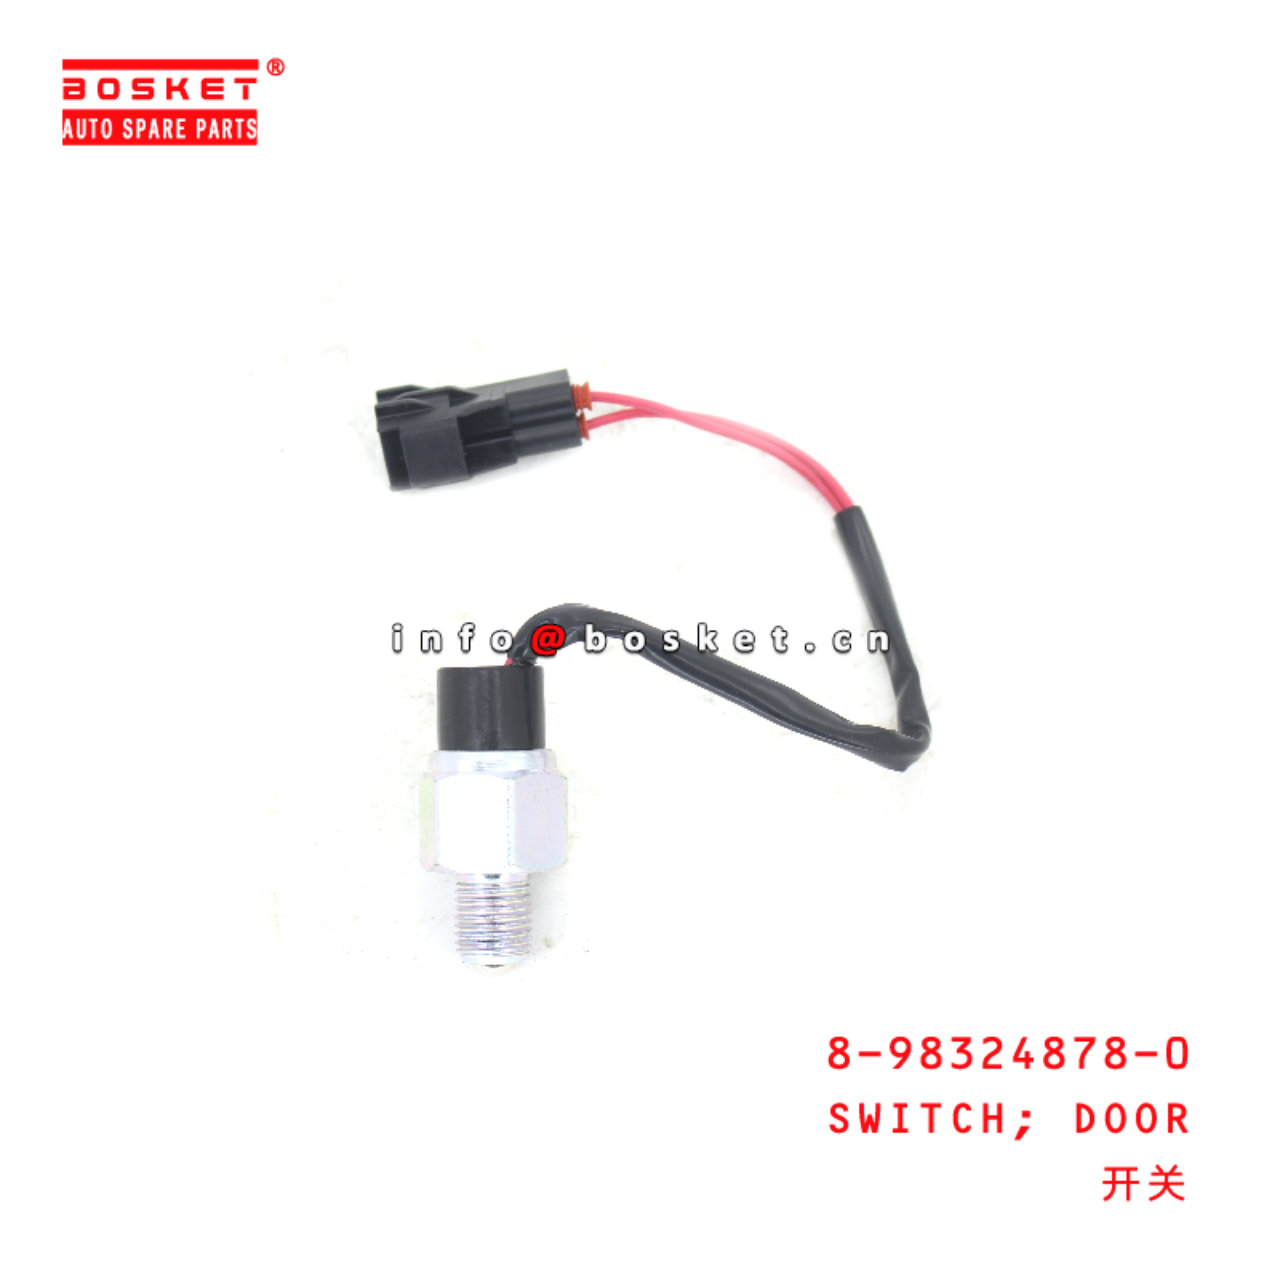 8-98324878-0 Door Switch suitable for ISUZU FVR 8983248780 - For 